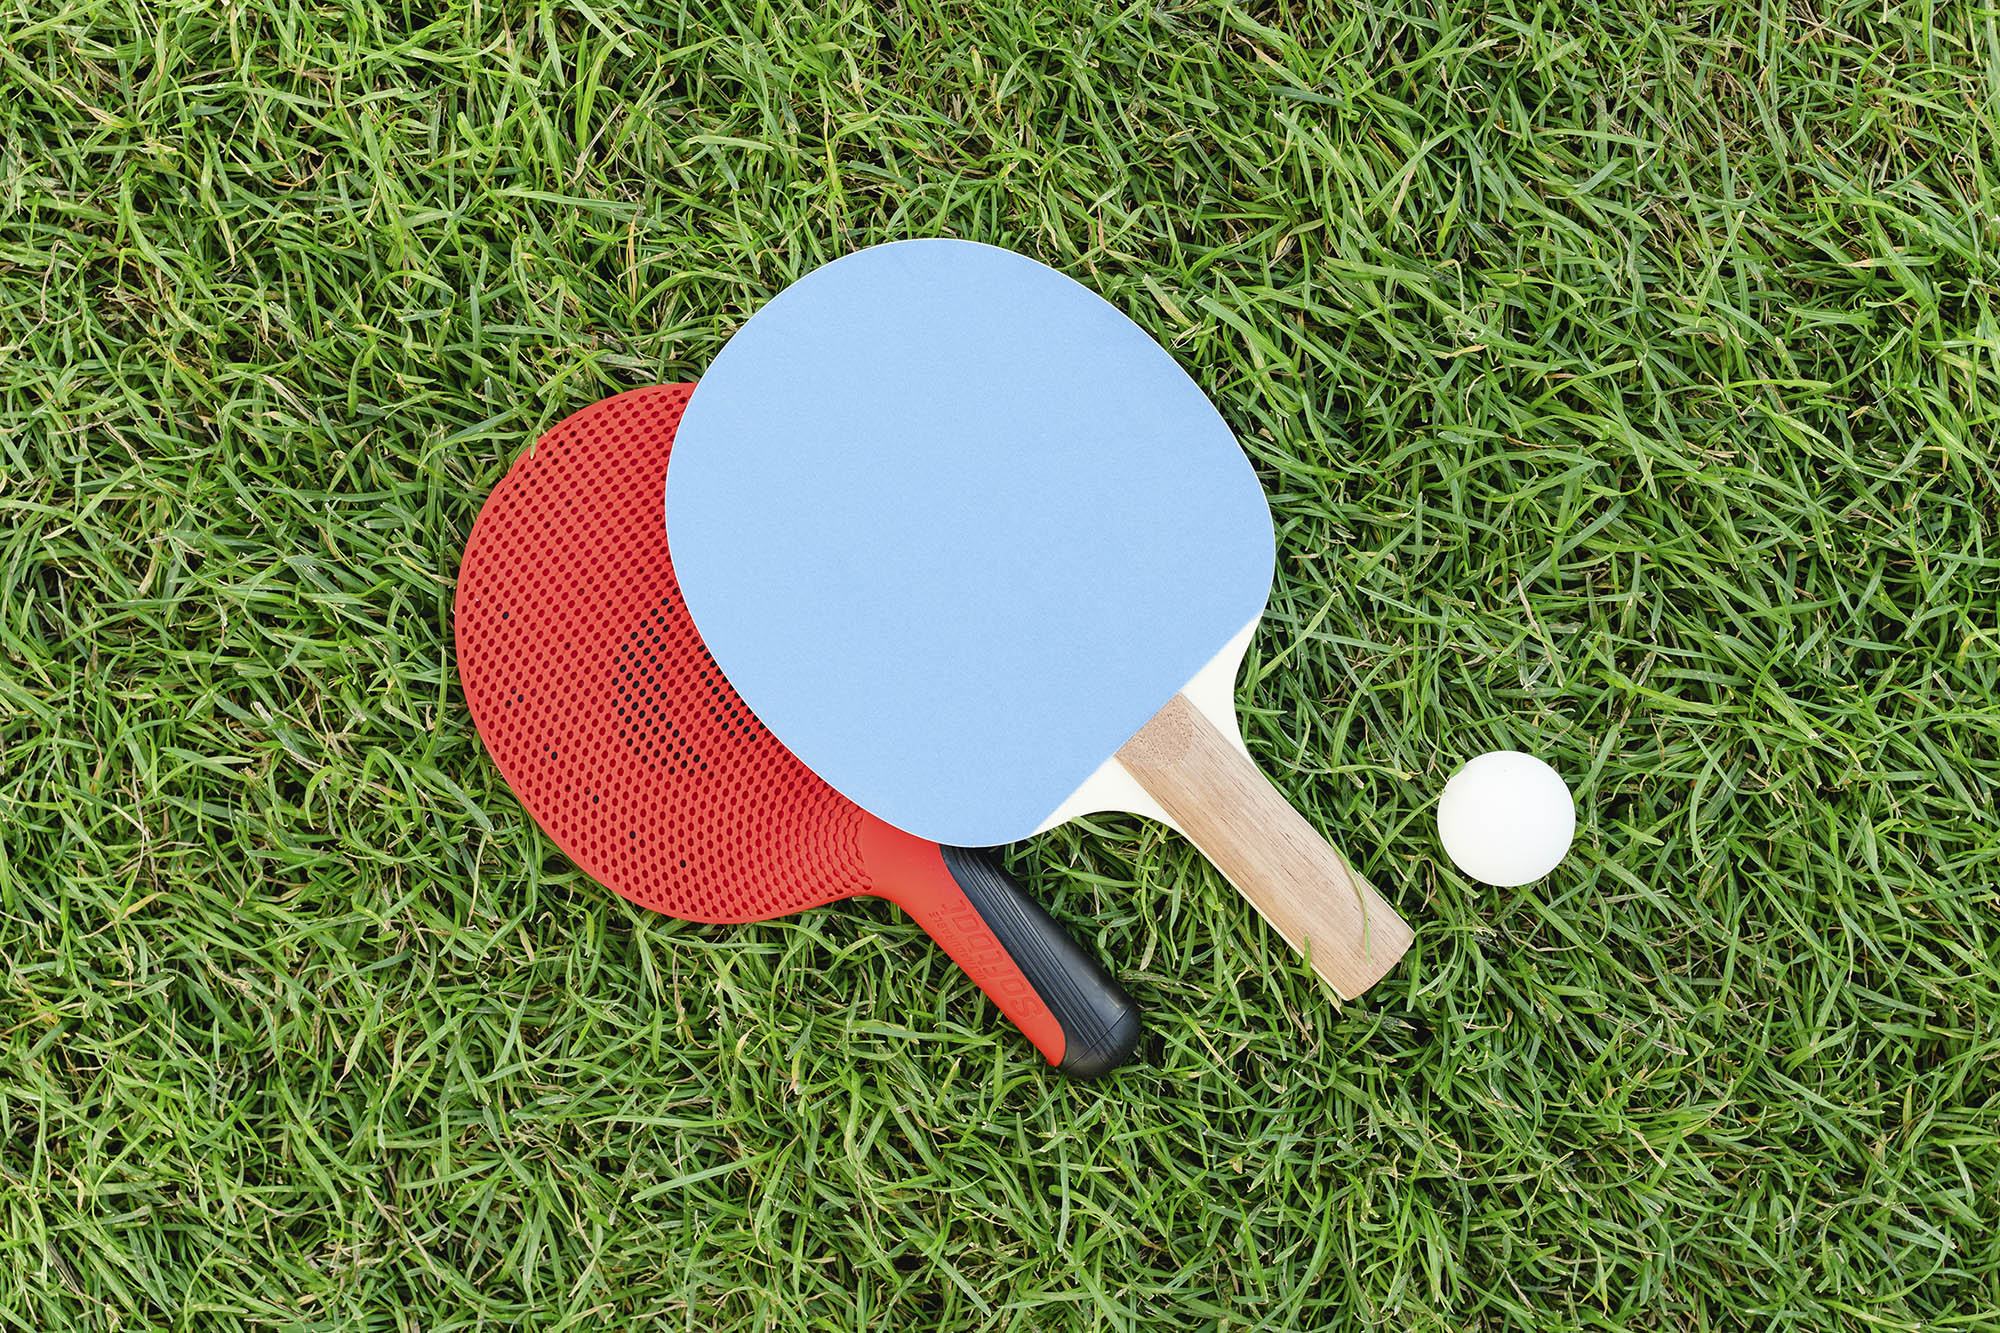 Фото: на зеленой траве лежат две ракетки (красная и голубая) и белый мячик для игры в настольный теннис